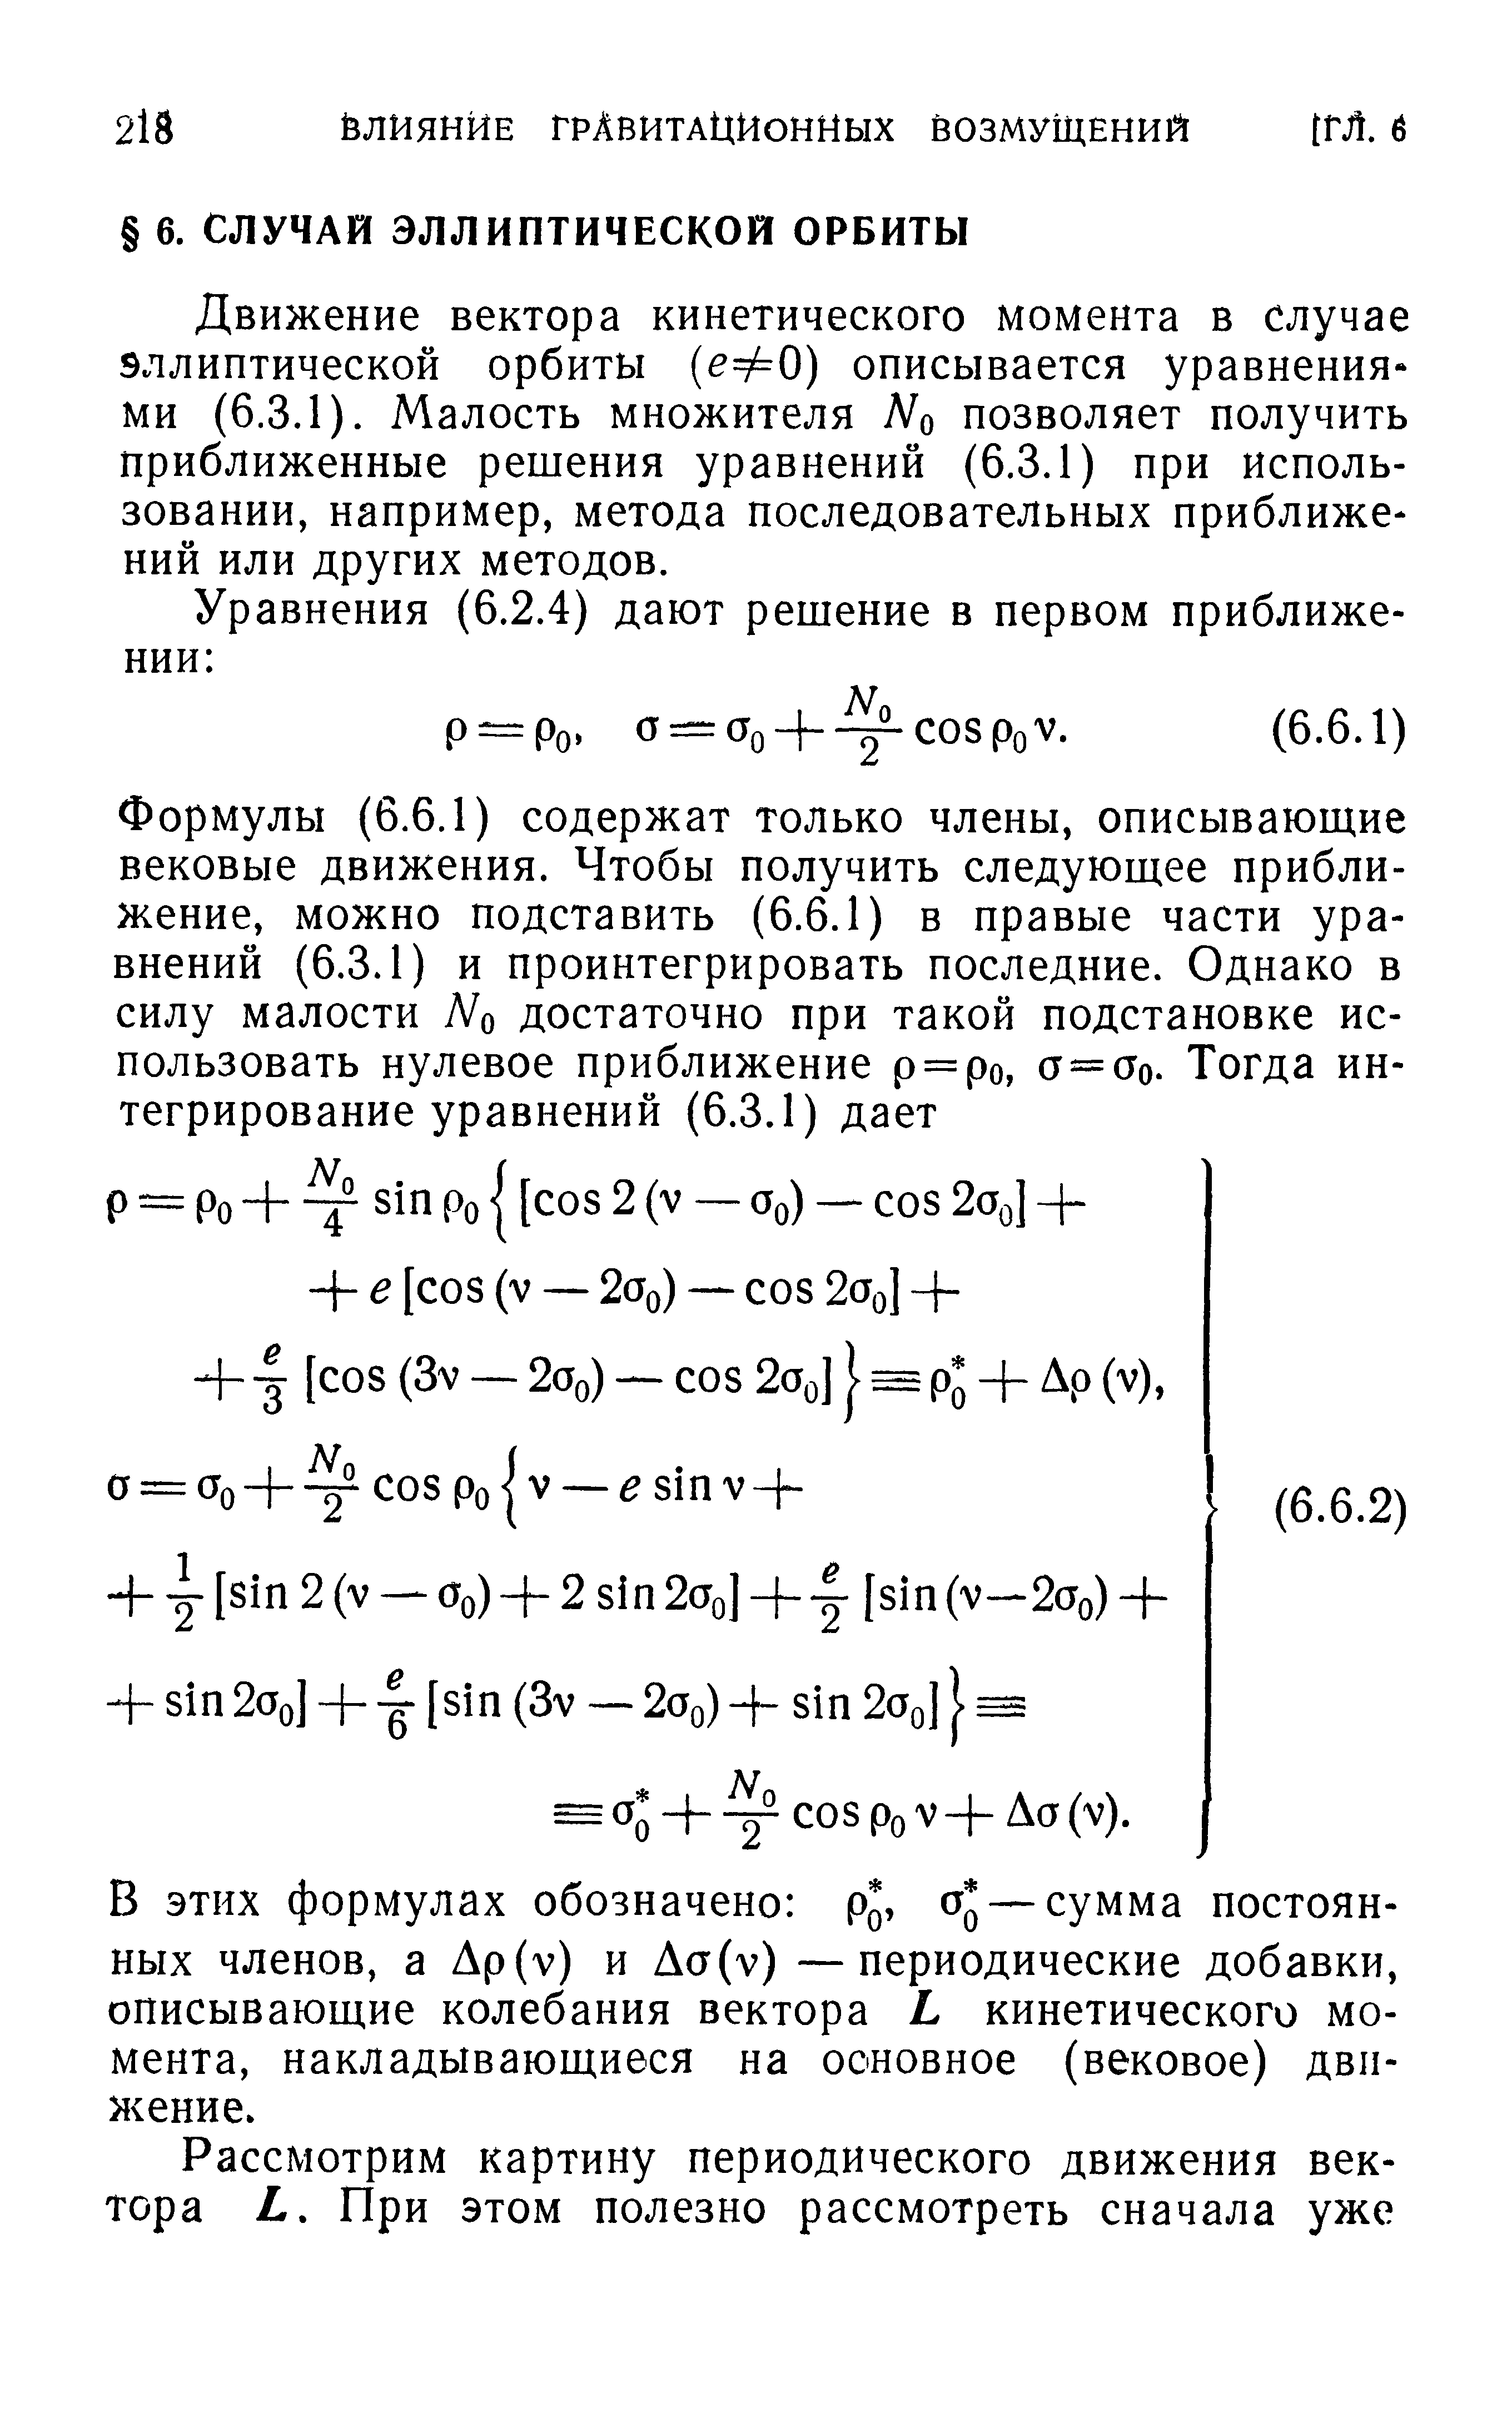 Движение вектора кинетического момента в случае эллиптической орбиты [еФО) описывается уравнениями (6.3.1). Малость множителя Л о позволяет получить приближенные решения уравнений (6,3.1) при использовании, например, метода последовательных приближений или других методов.
